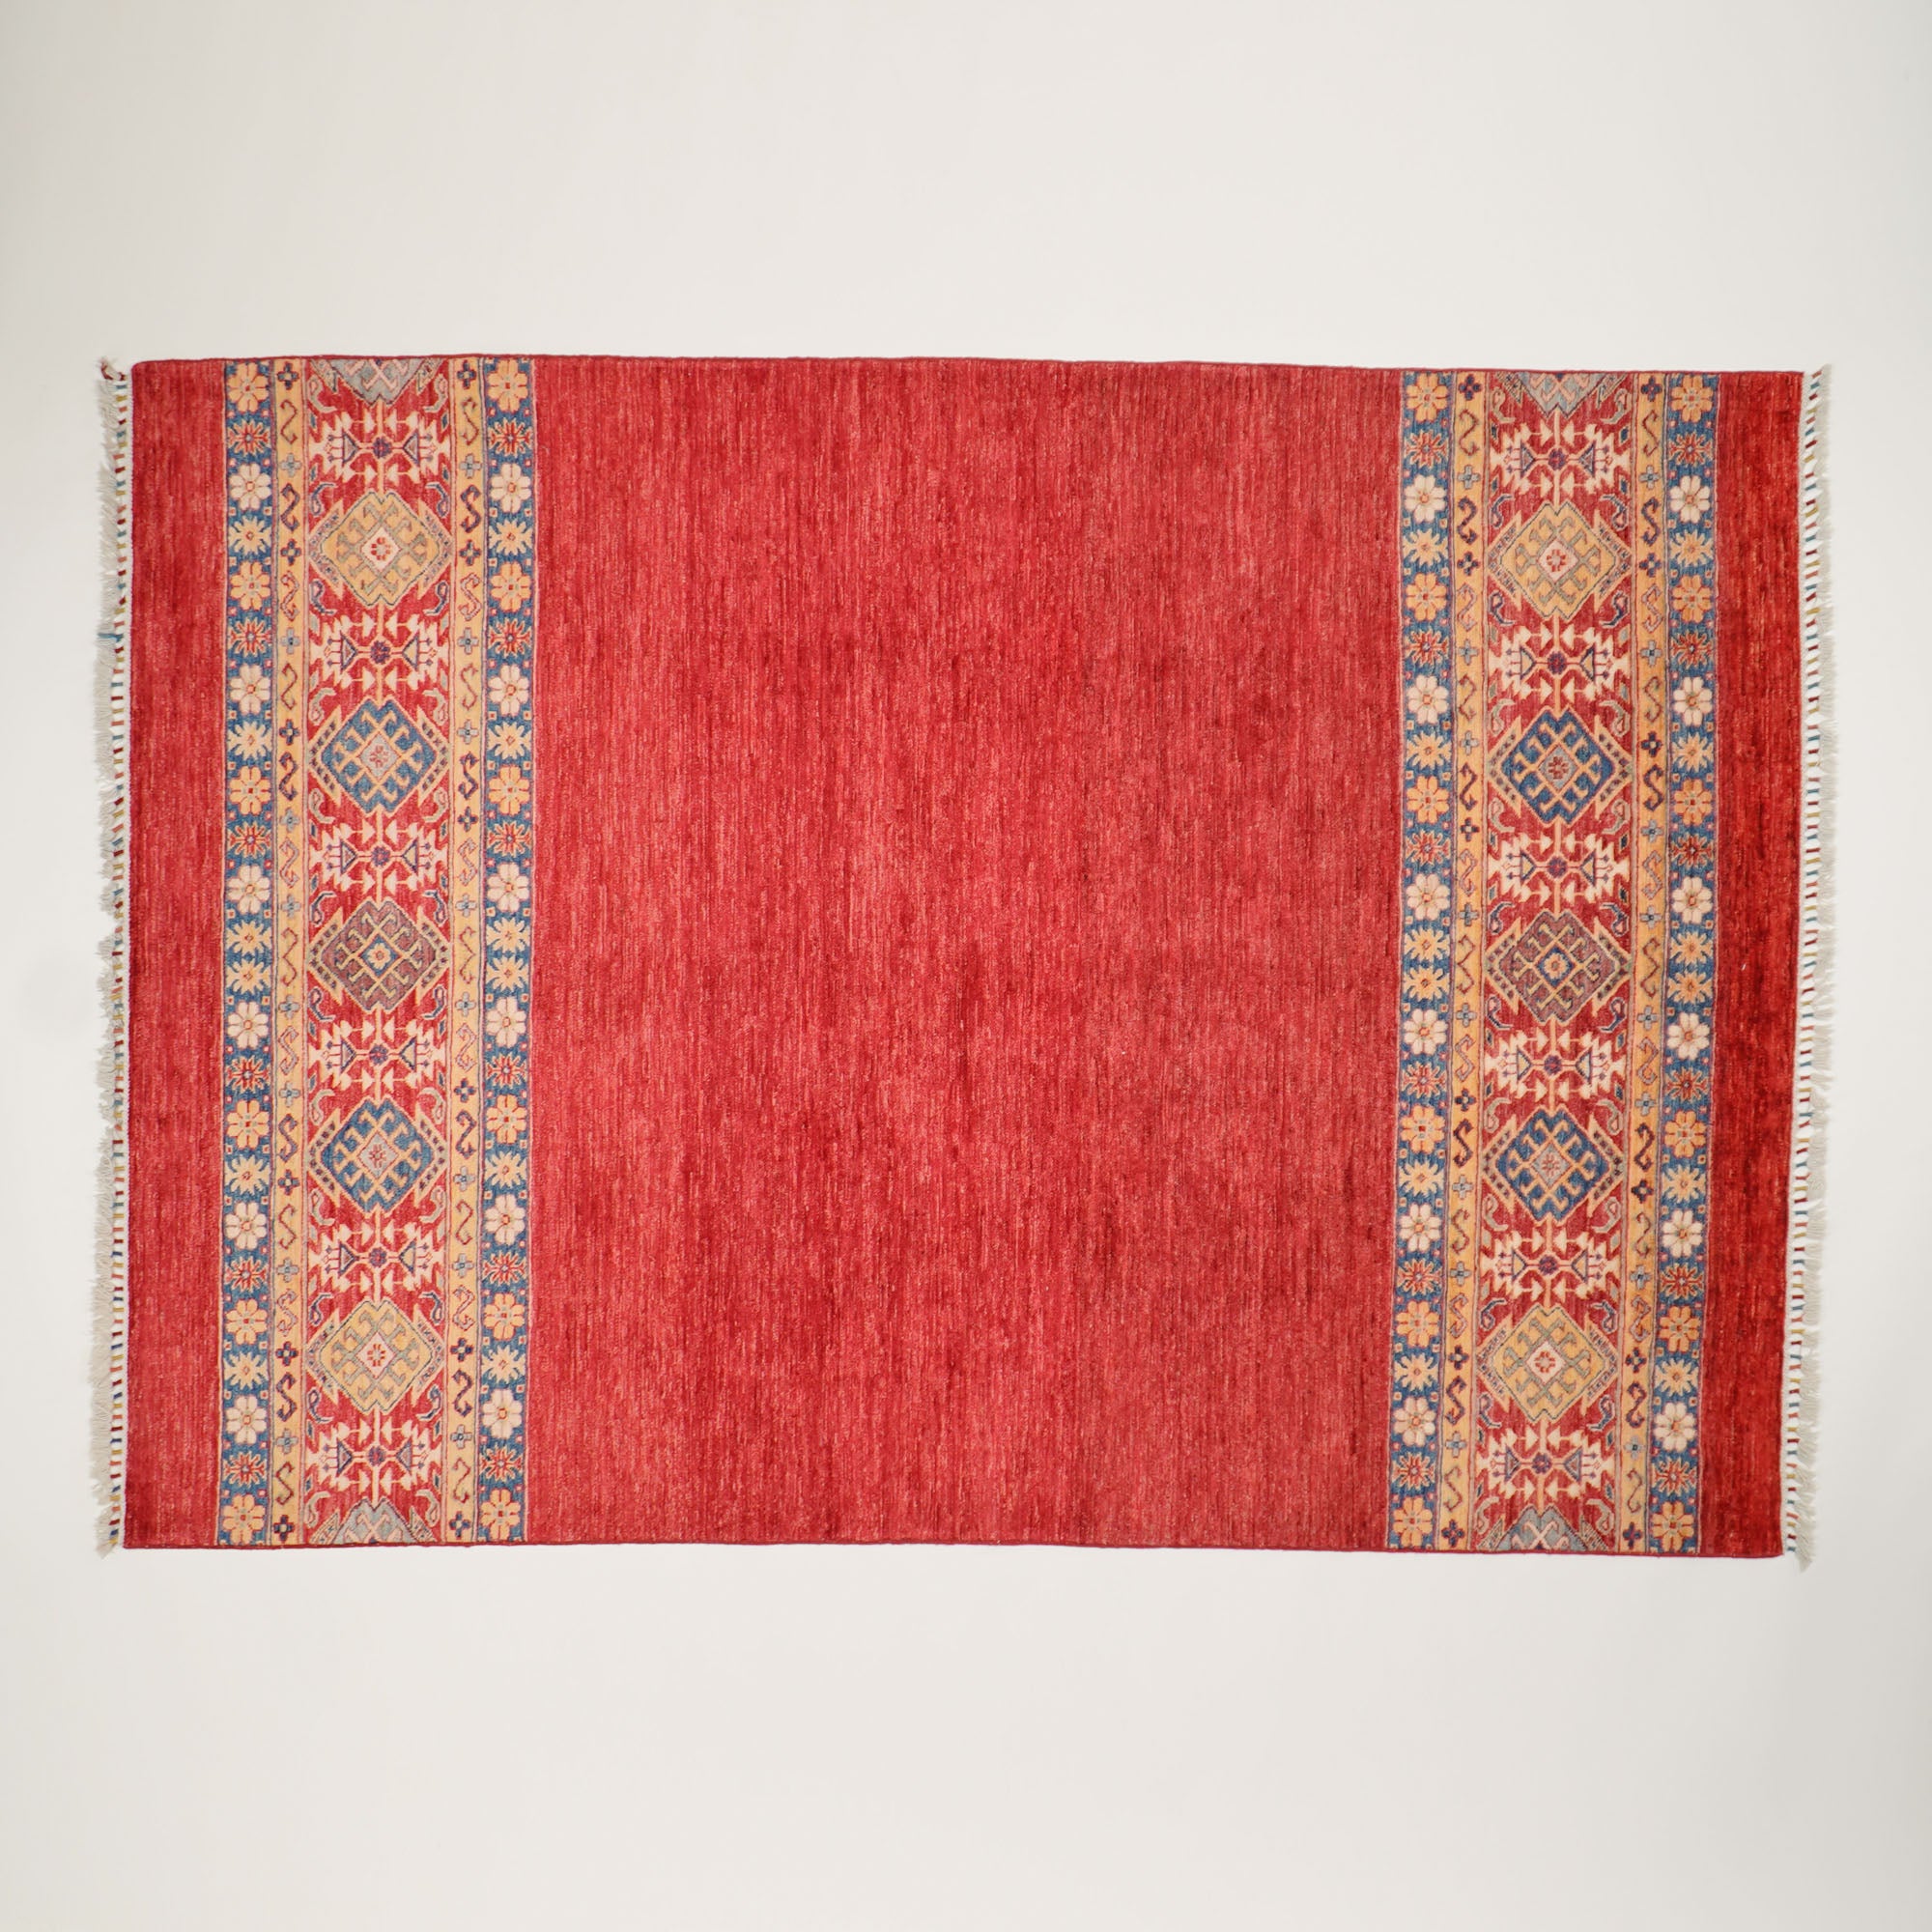 Sultani Series Anatolian Design Hand Woven Carpet